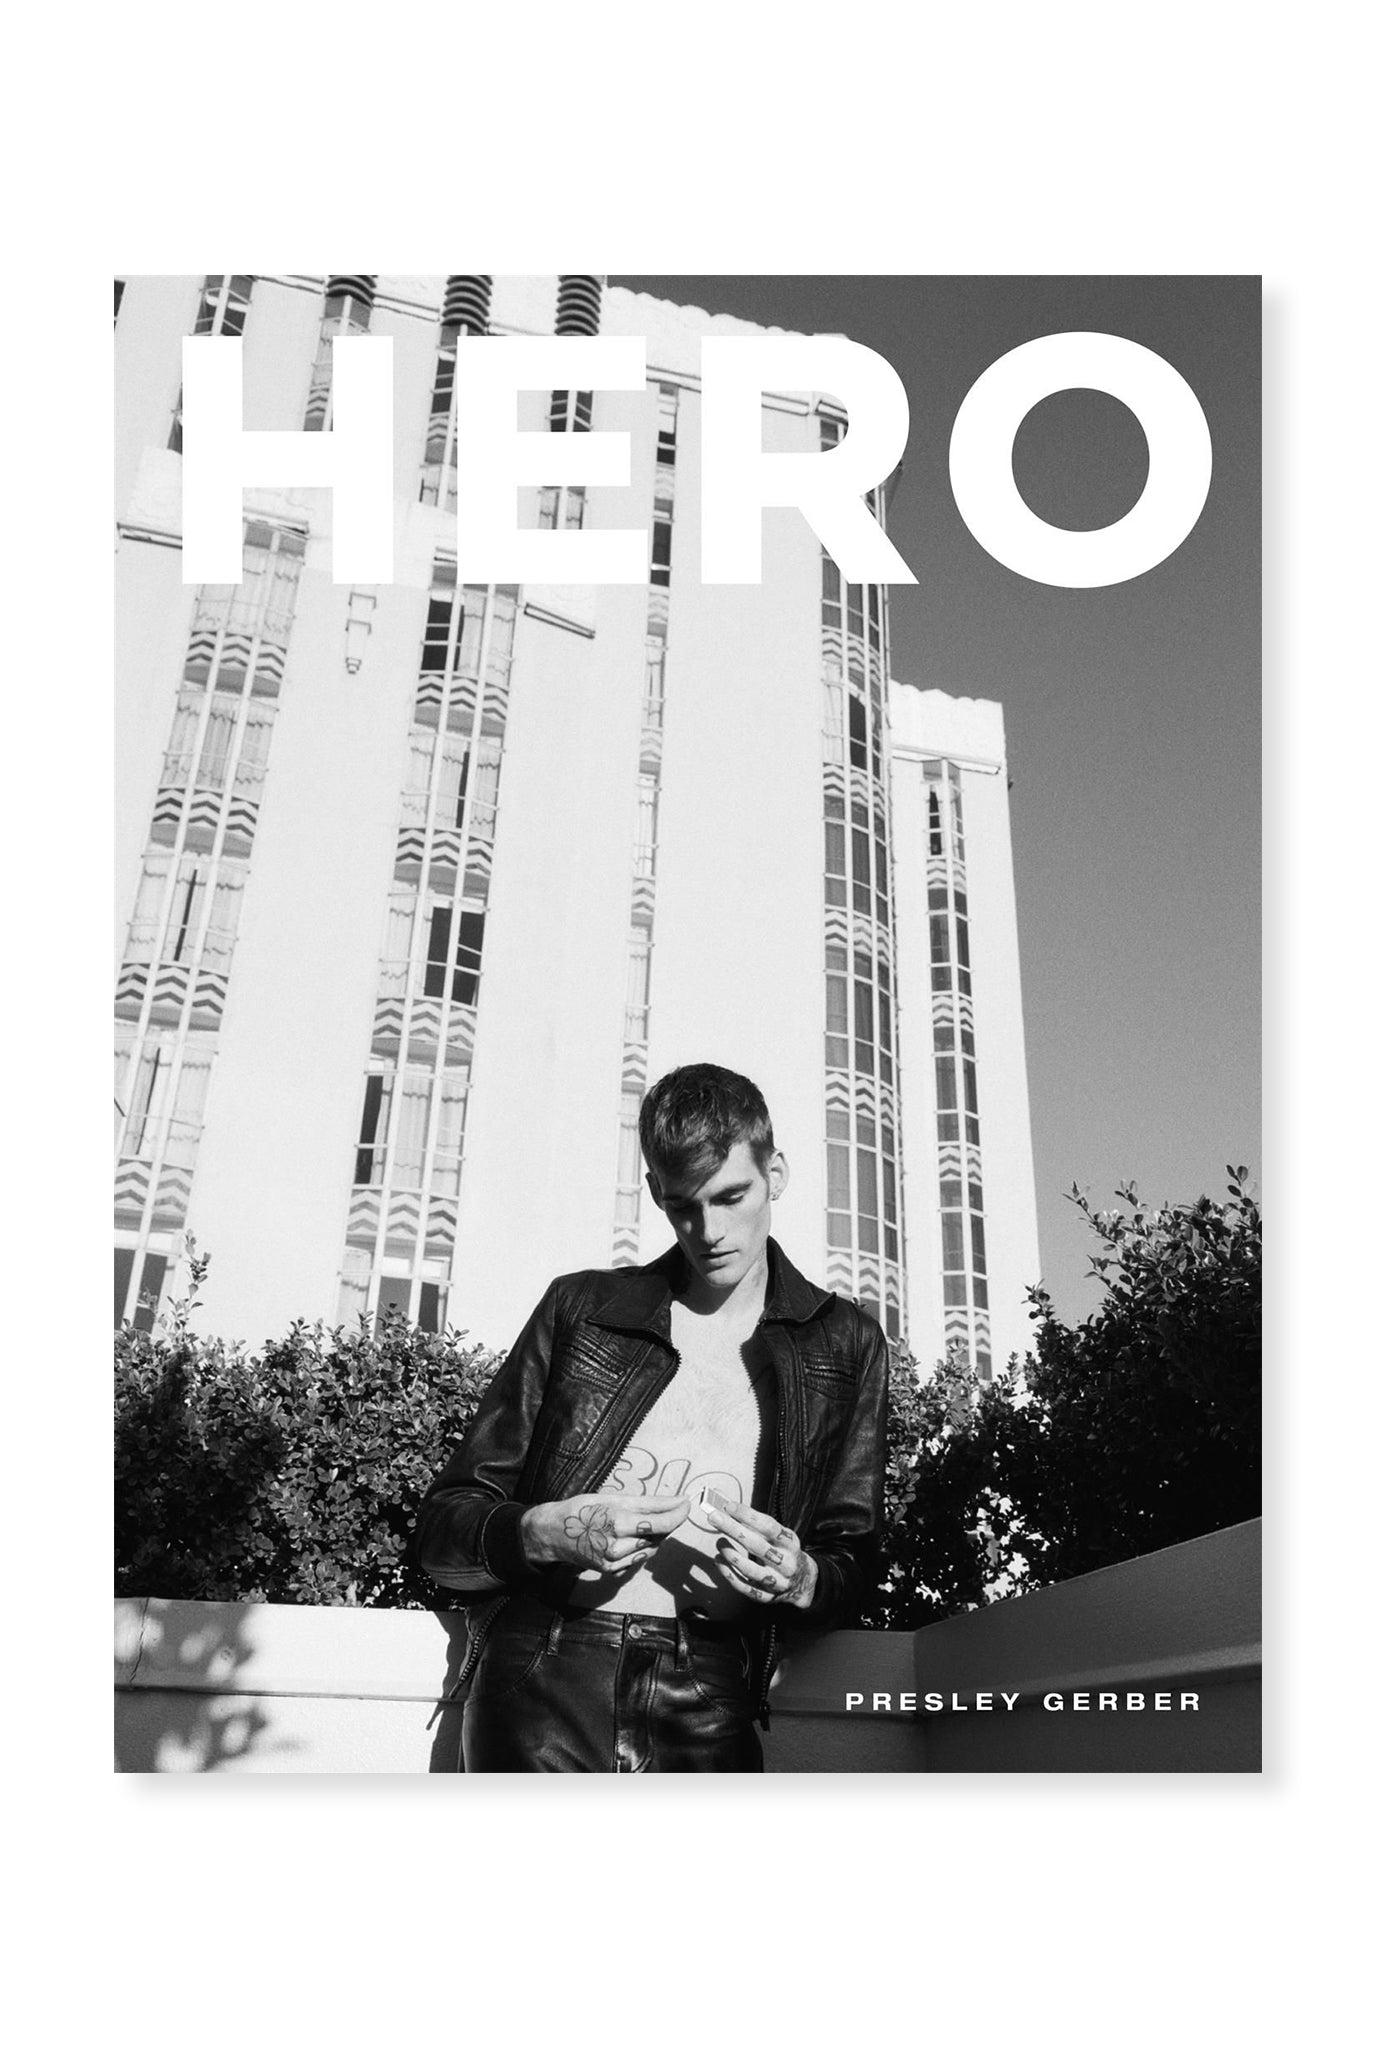 HERO, Issue 29